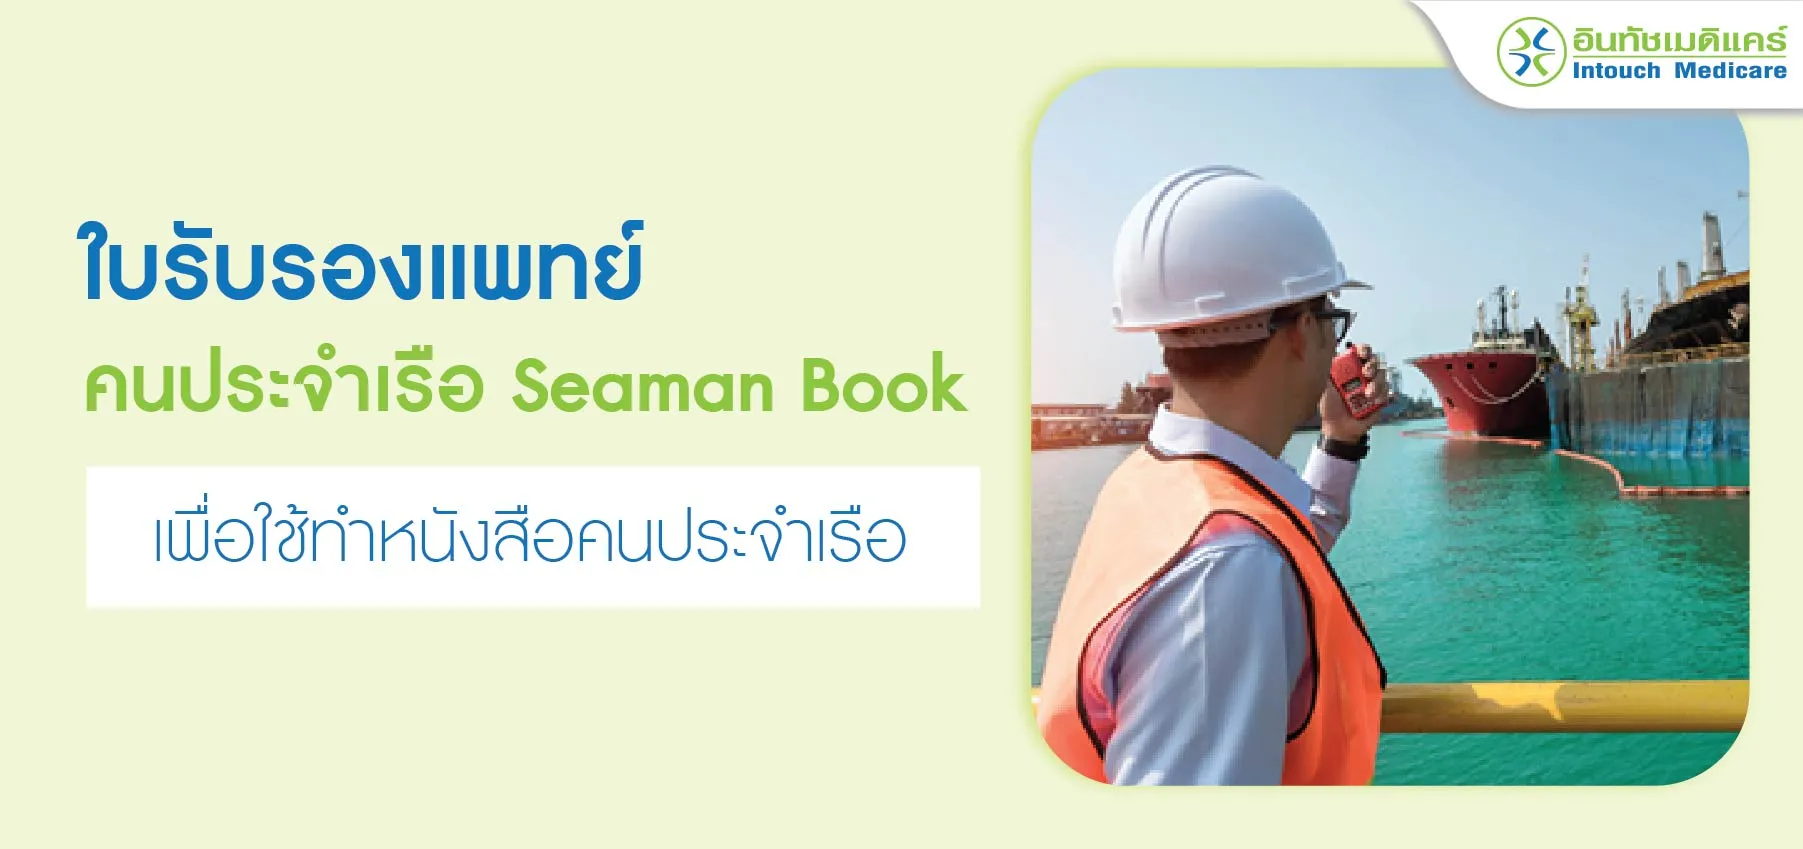 ใบรับรองแพทย์ seaman book เพื่อใช้ทำหนังสือคนประจำเรือ